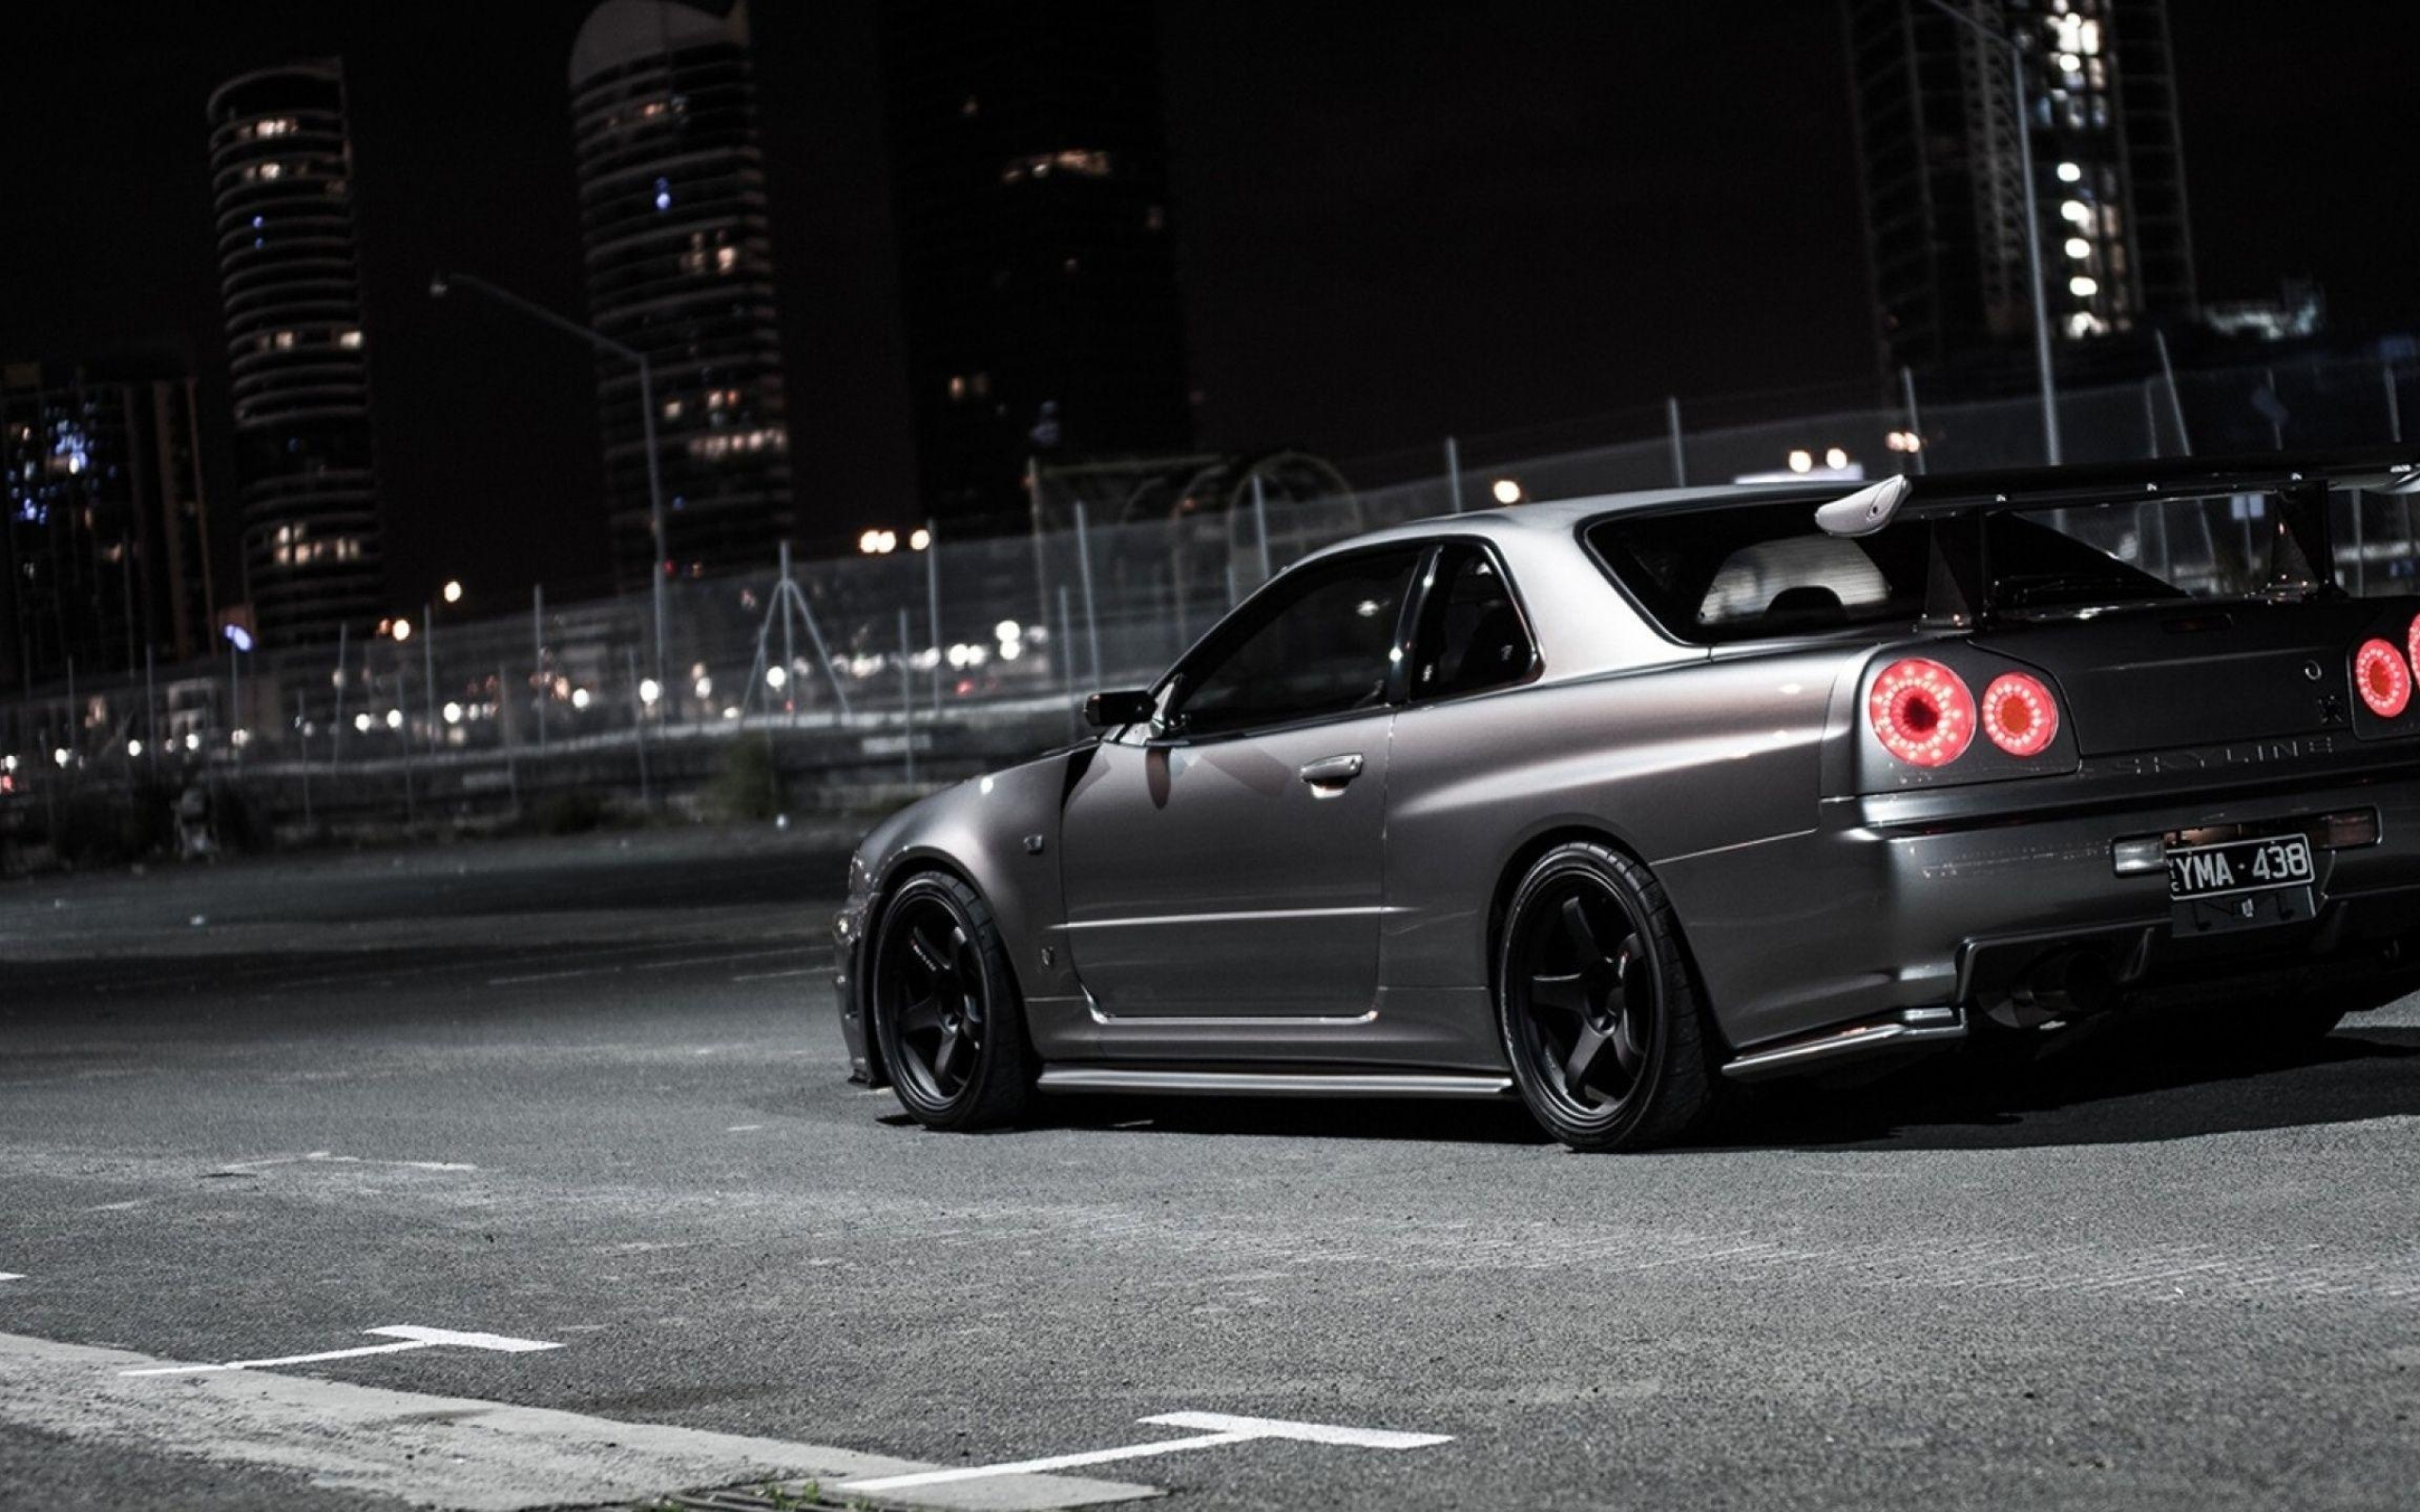 Fast and Furious Skyline, Nissan GT-R desktop wallpapers, 2560x1600 HD Desktop